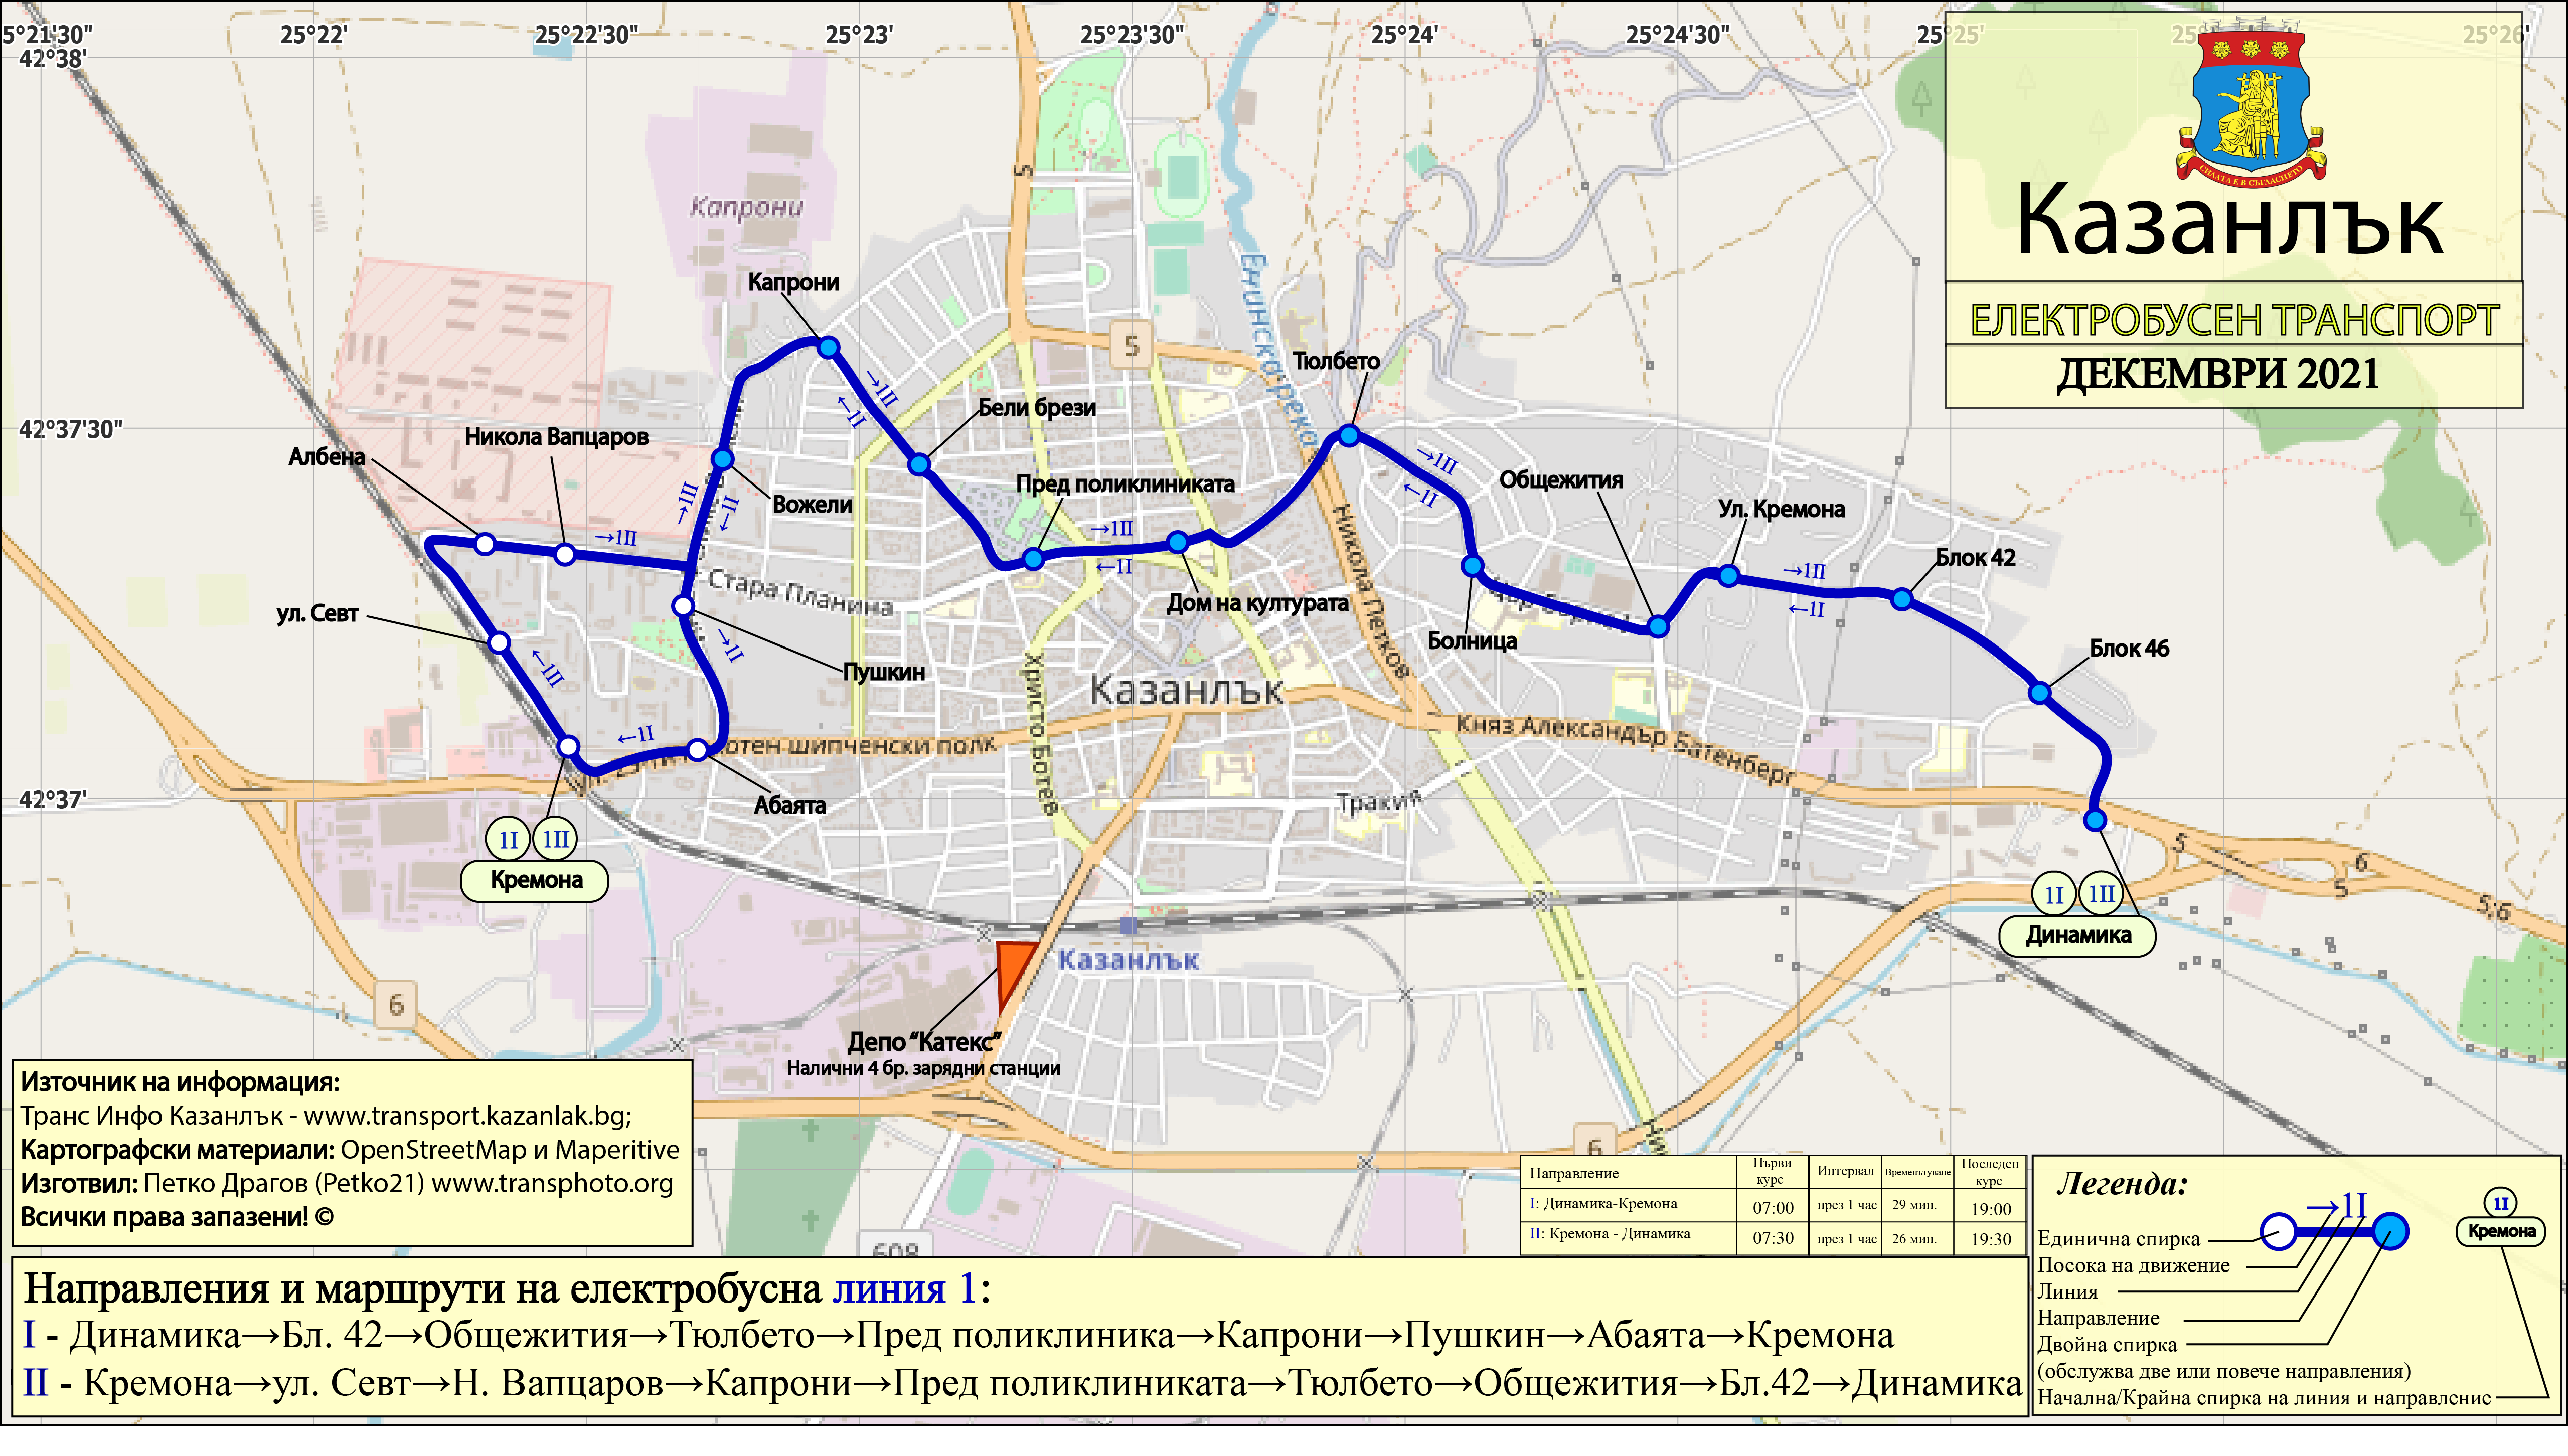 Казанлык — Карти и схеми на електробусни маршрути; Карты, созданные с использованием OpenStreetMap